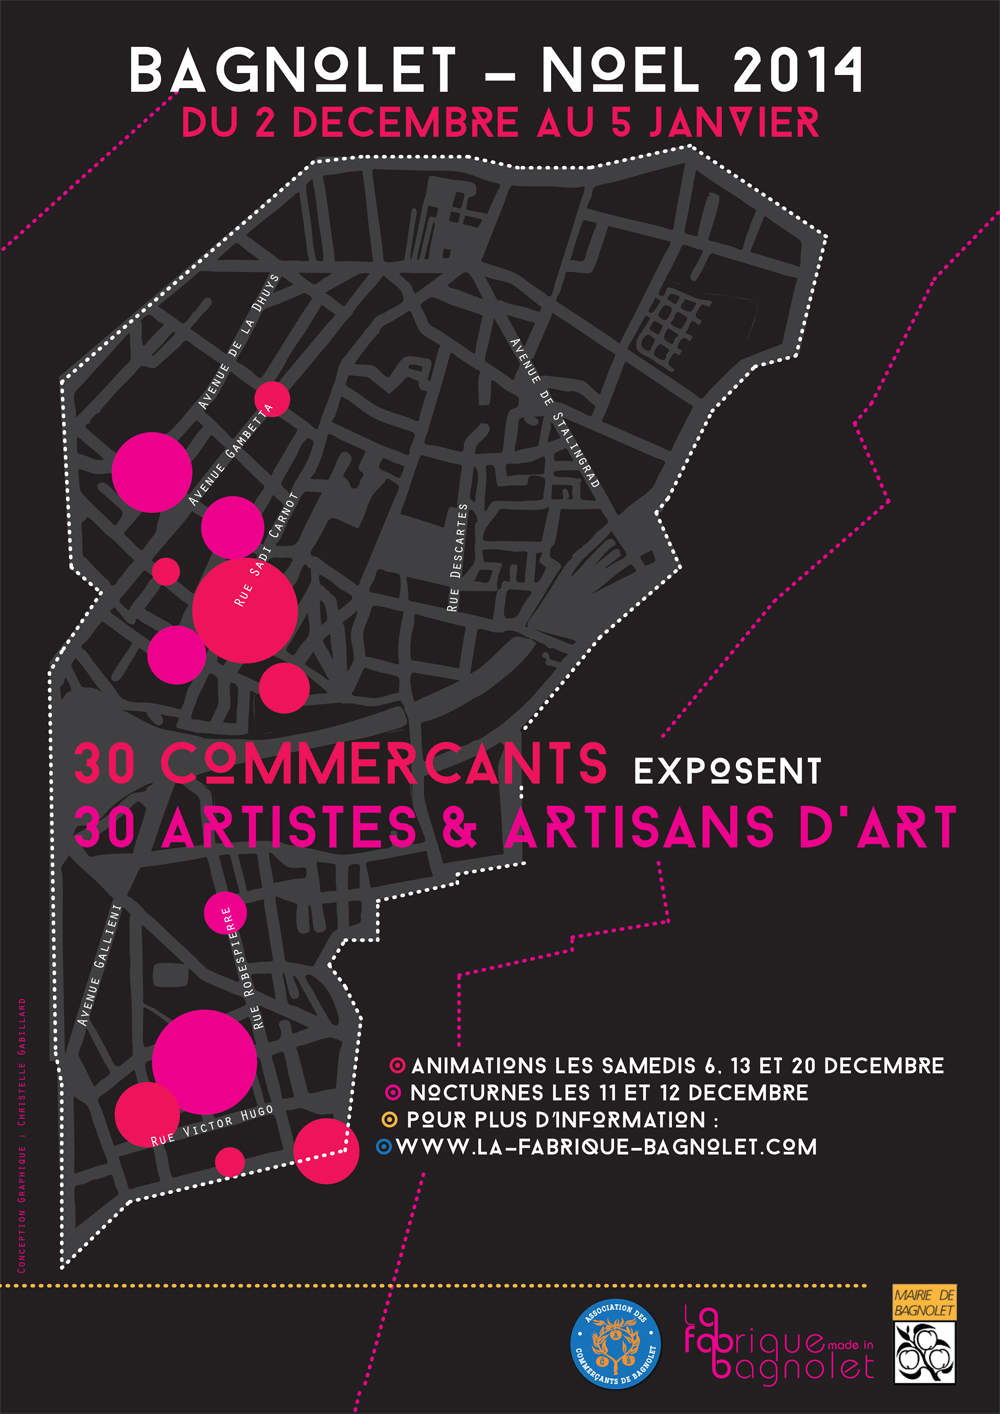 Festivités de noël à Bagnolet 30 artistes et artisans / 30 commerçants